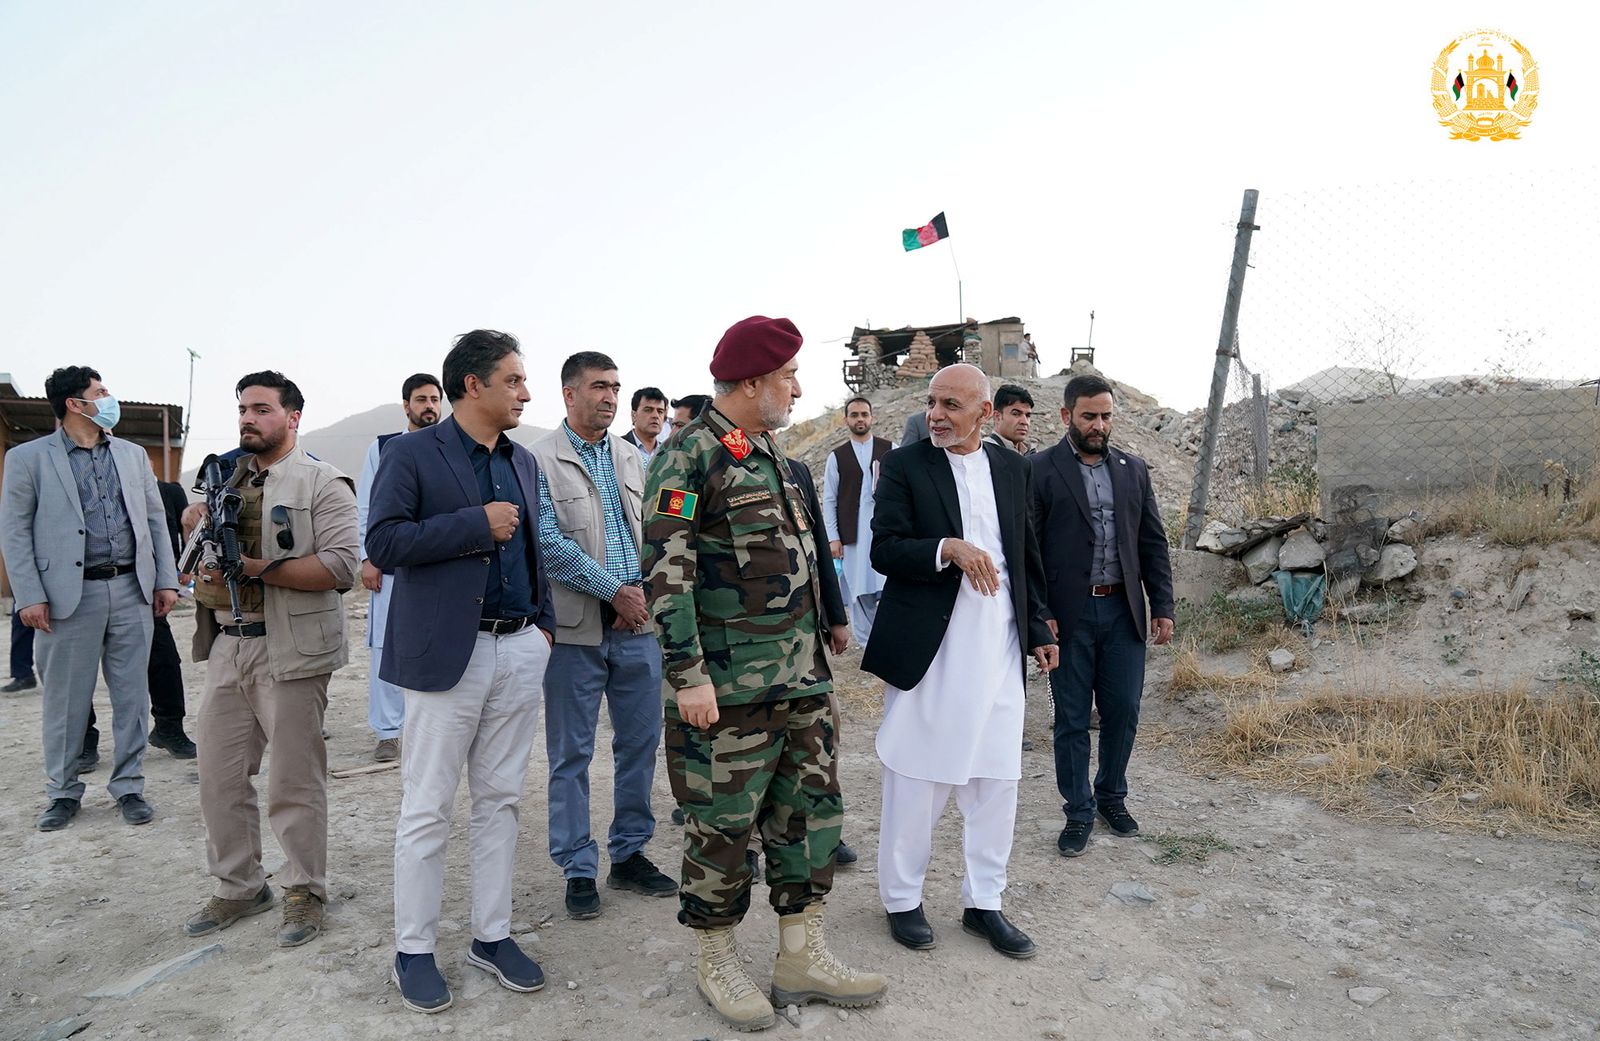 الرئيس الأفغاني أشرف غني ووزير الدفاع بالإنابة بسم الله خان محمدي، يزوران الفيلق العسكري في كابول -  14 أغسطس 2021 - via REUTERS